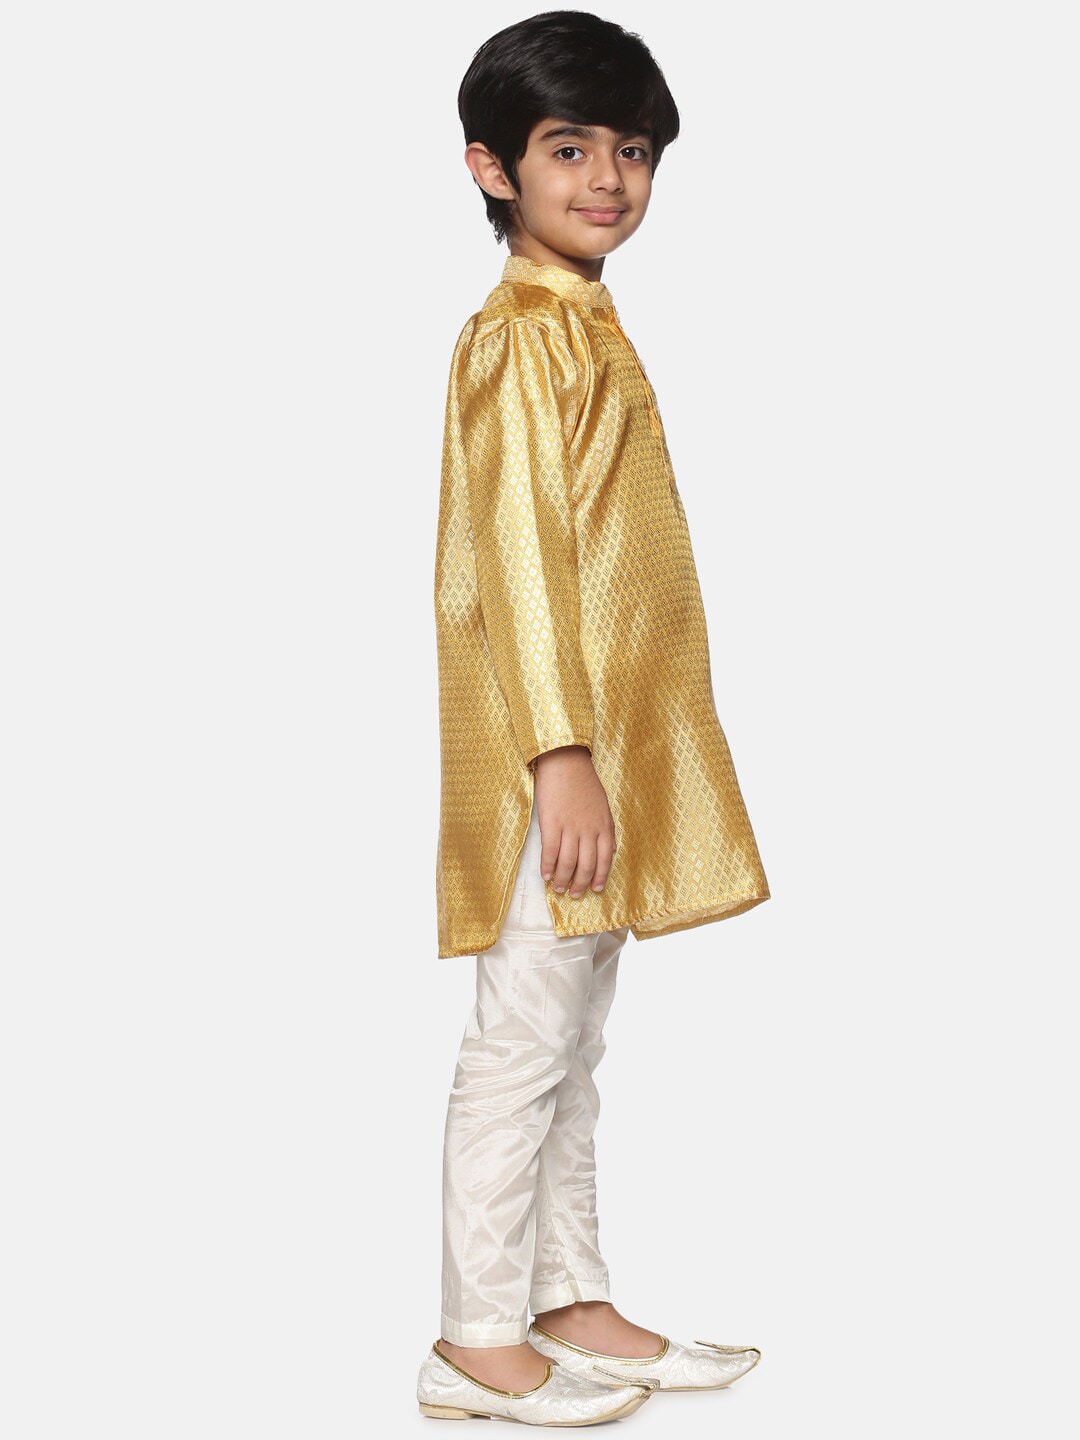 Sethukrishna Boys Gold-Toned & Off-White Kurta With Pyjamas - Distacart